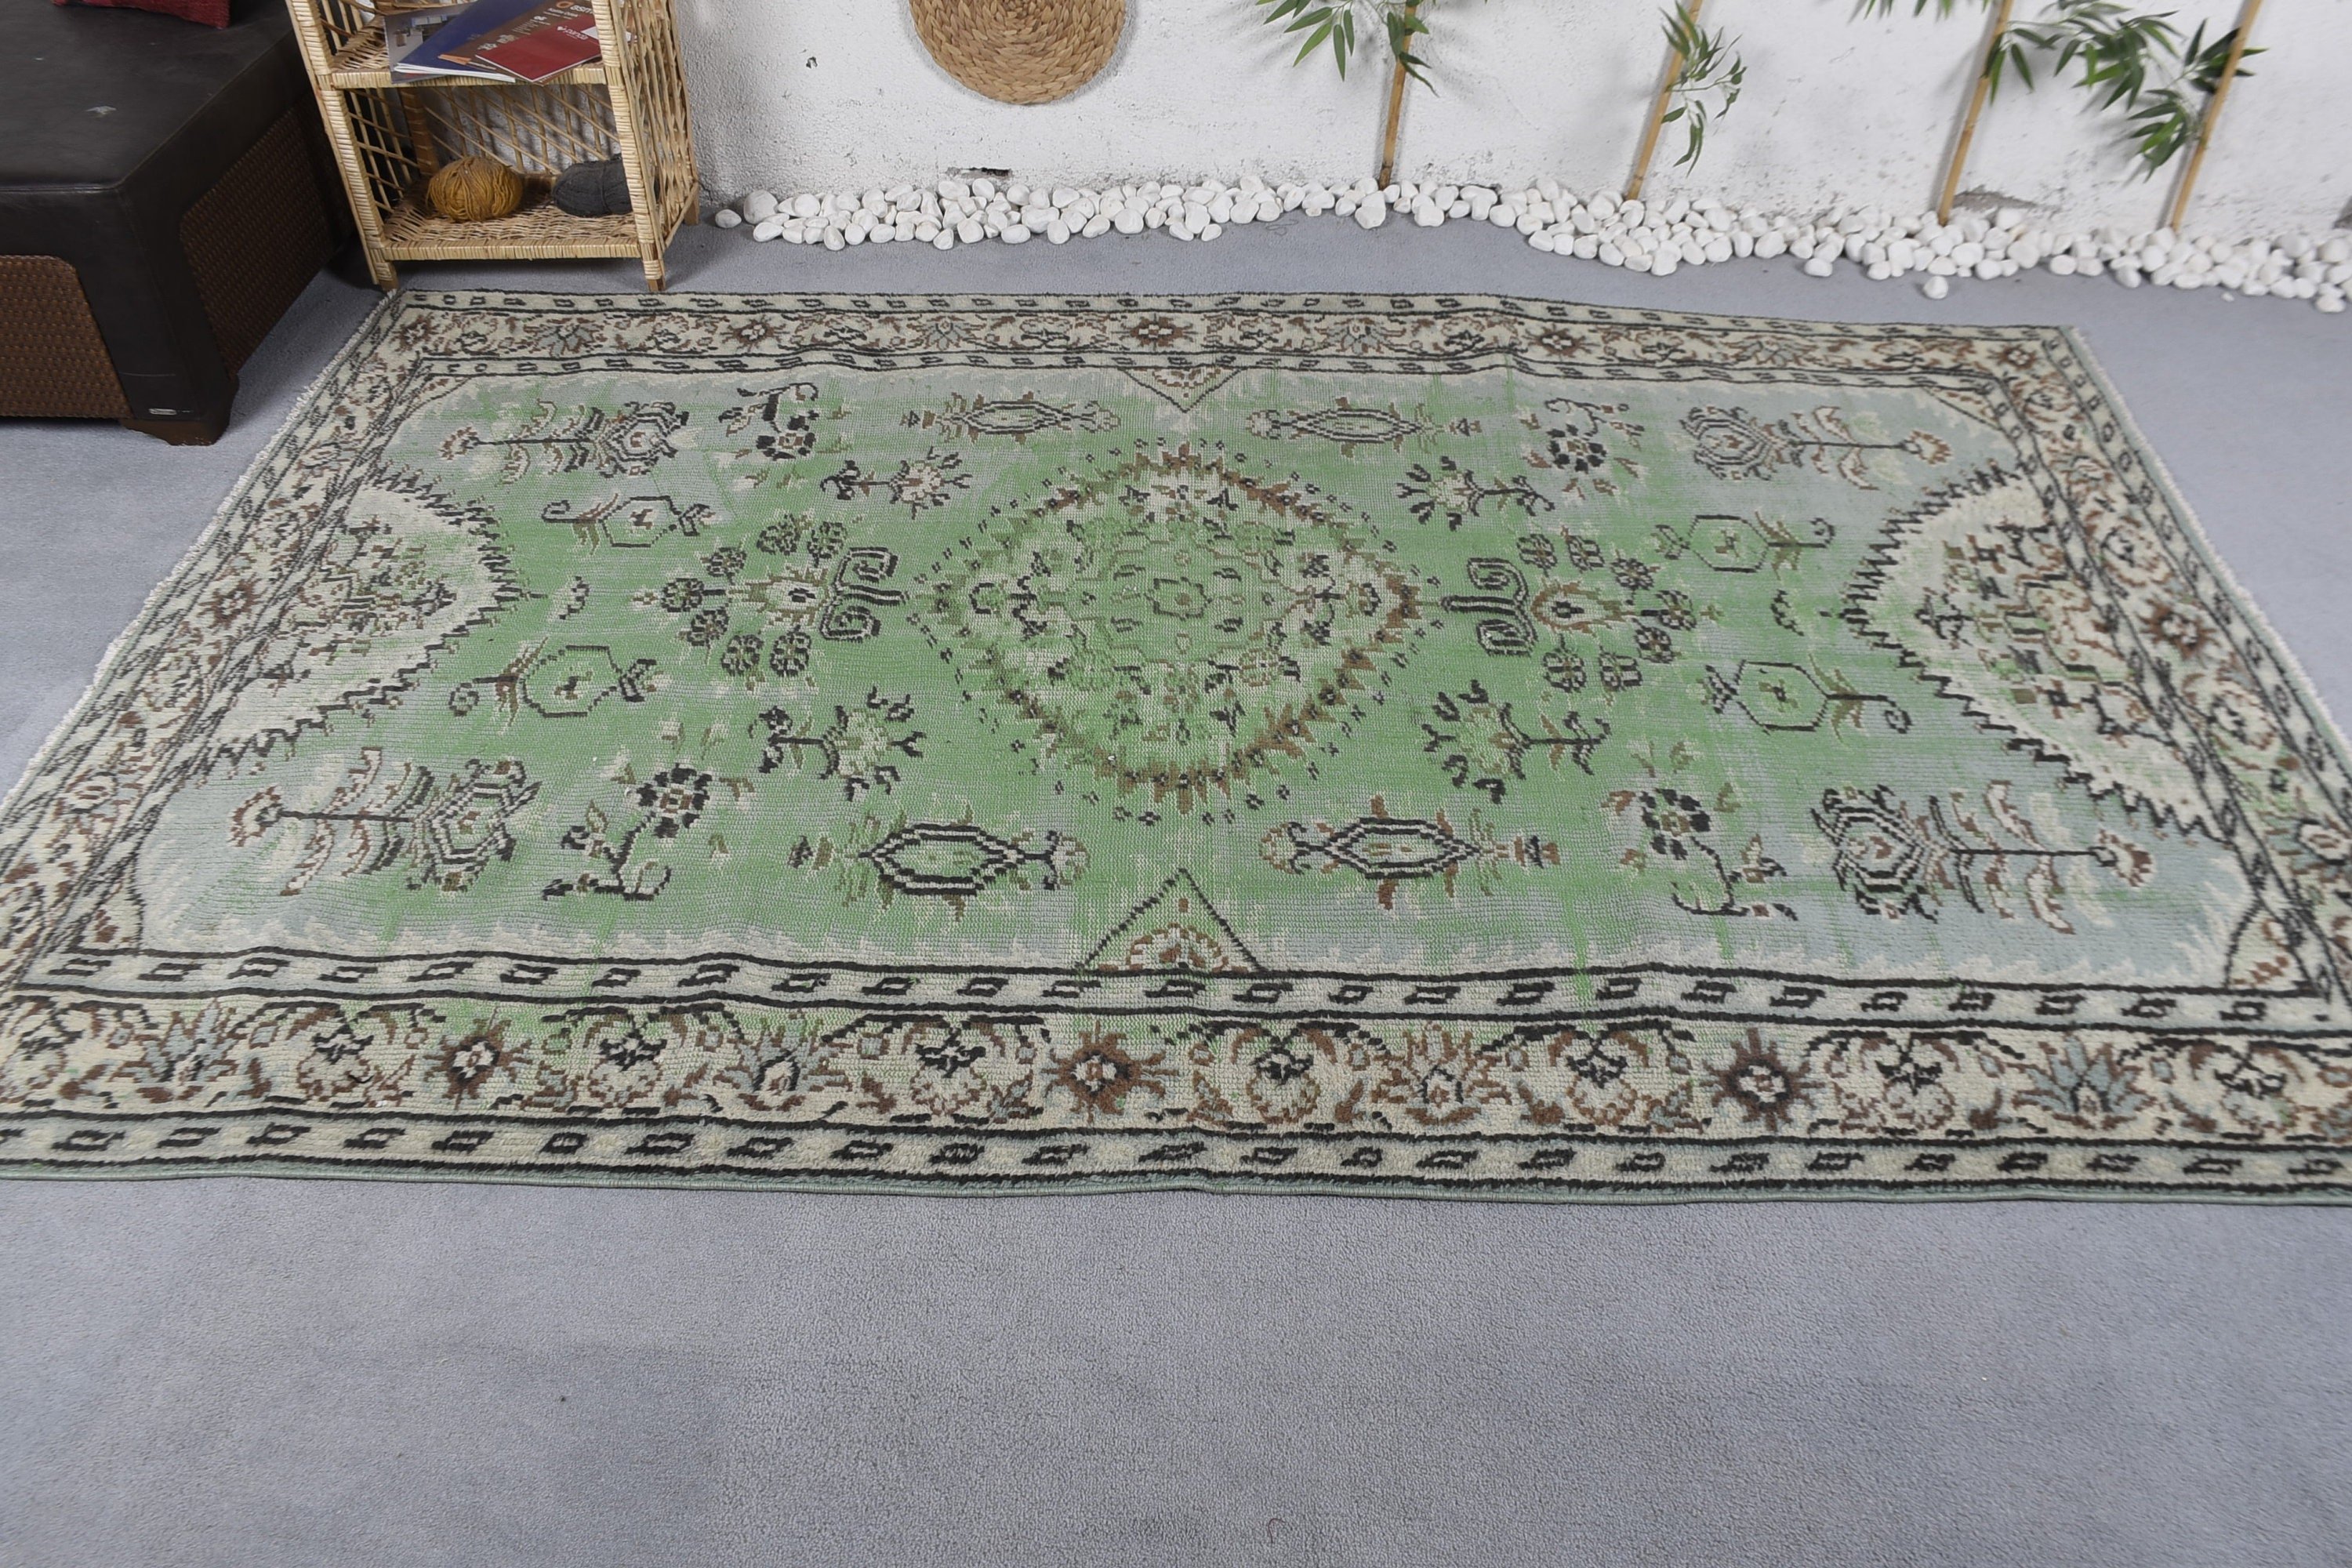 Turkish Rugs, Living Room Rug, Antique Rug, Vintage Rugs, Green Wool Rug, Moroccan Rugs, Bedroom Rug, Organic Rug, 5.9x9.1 ft Large Rug